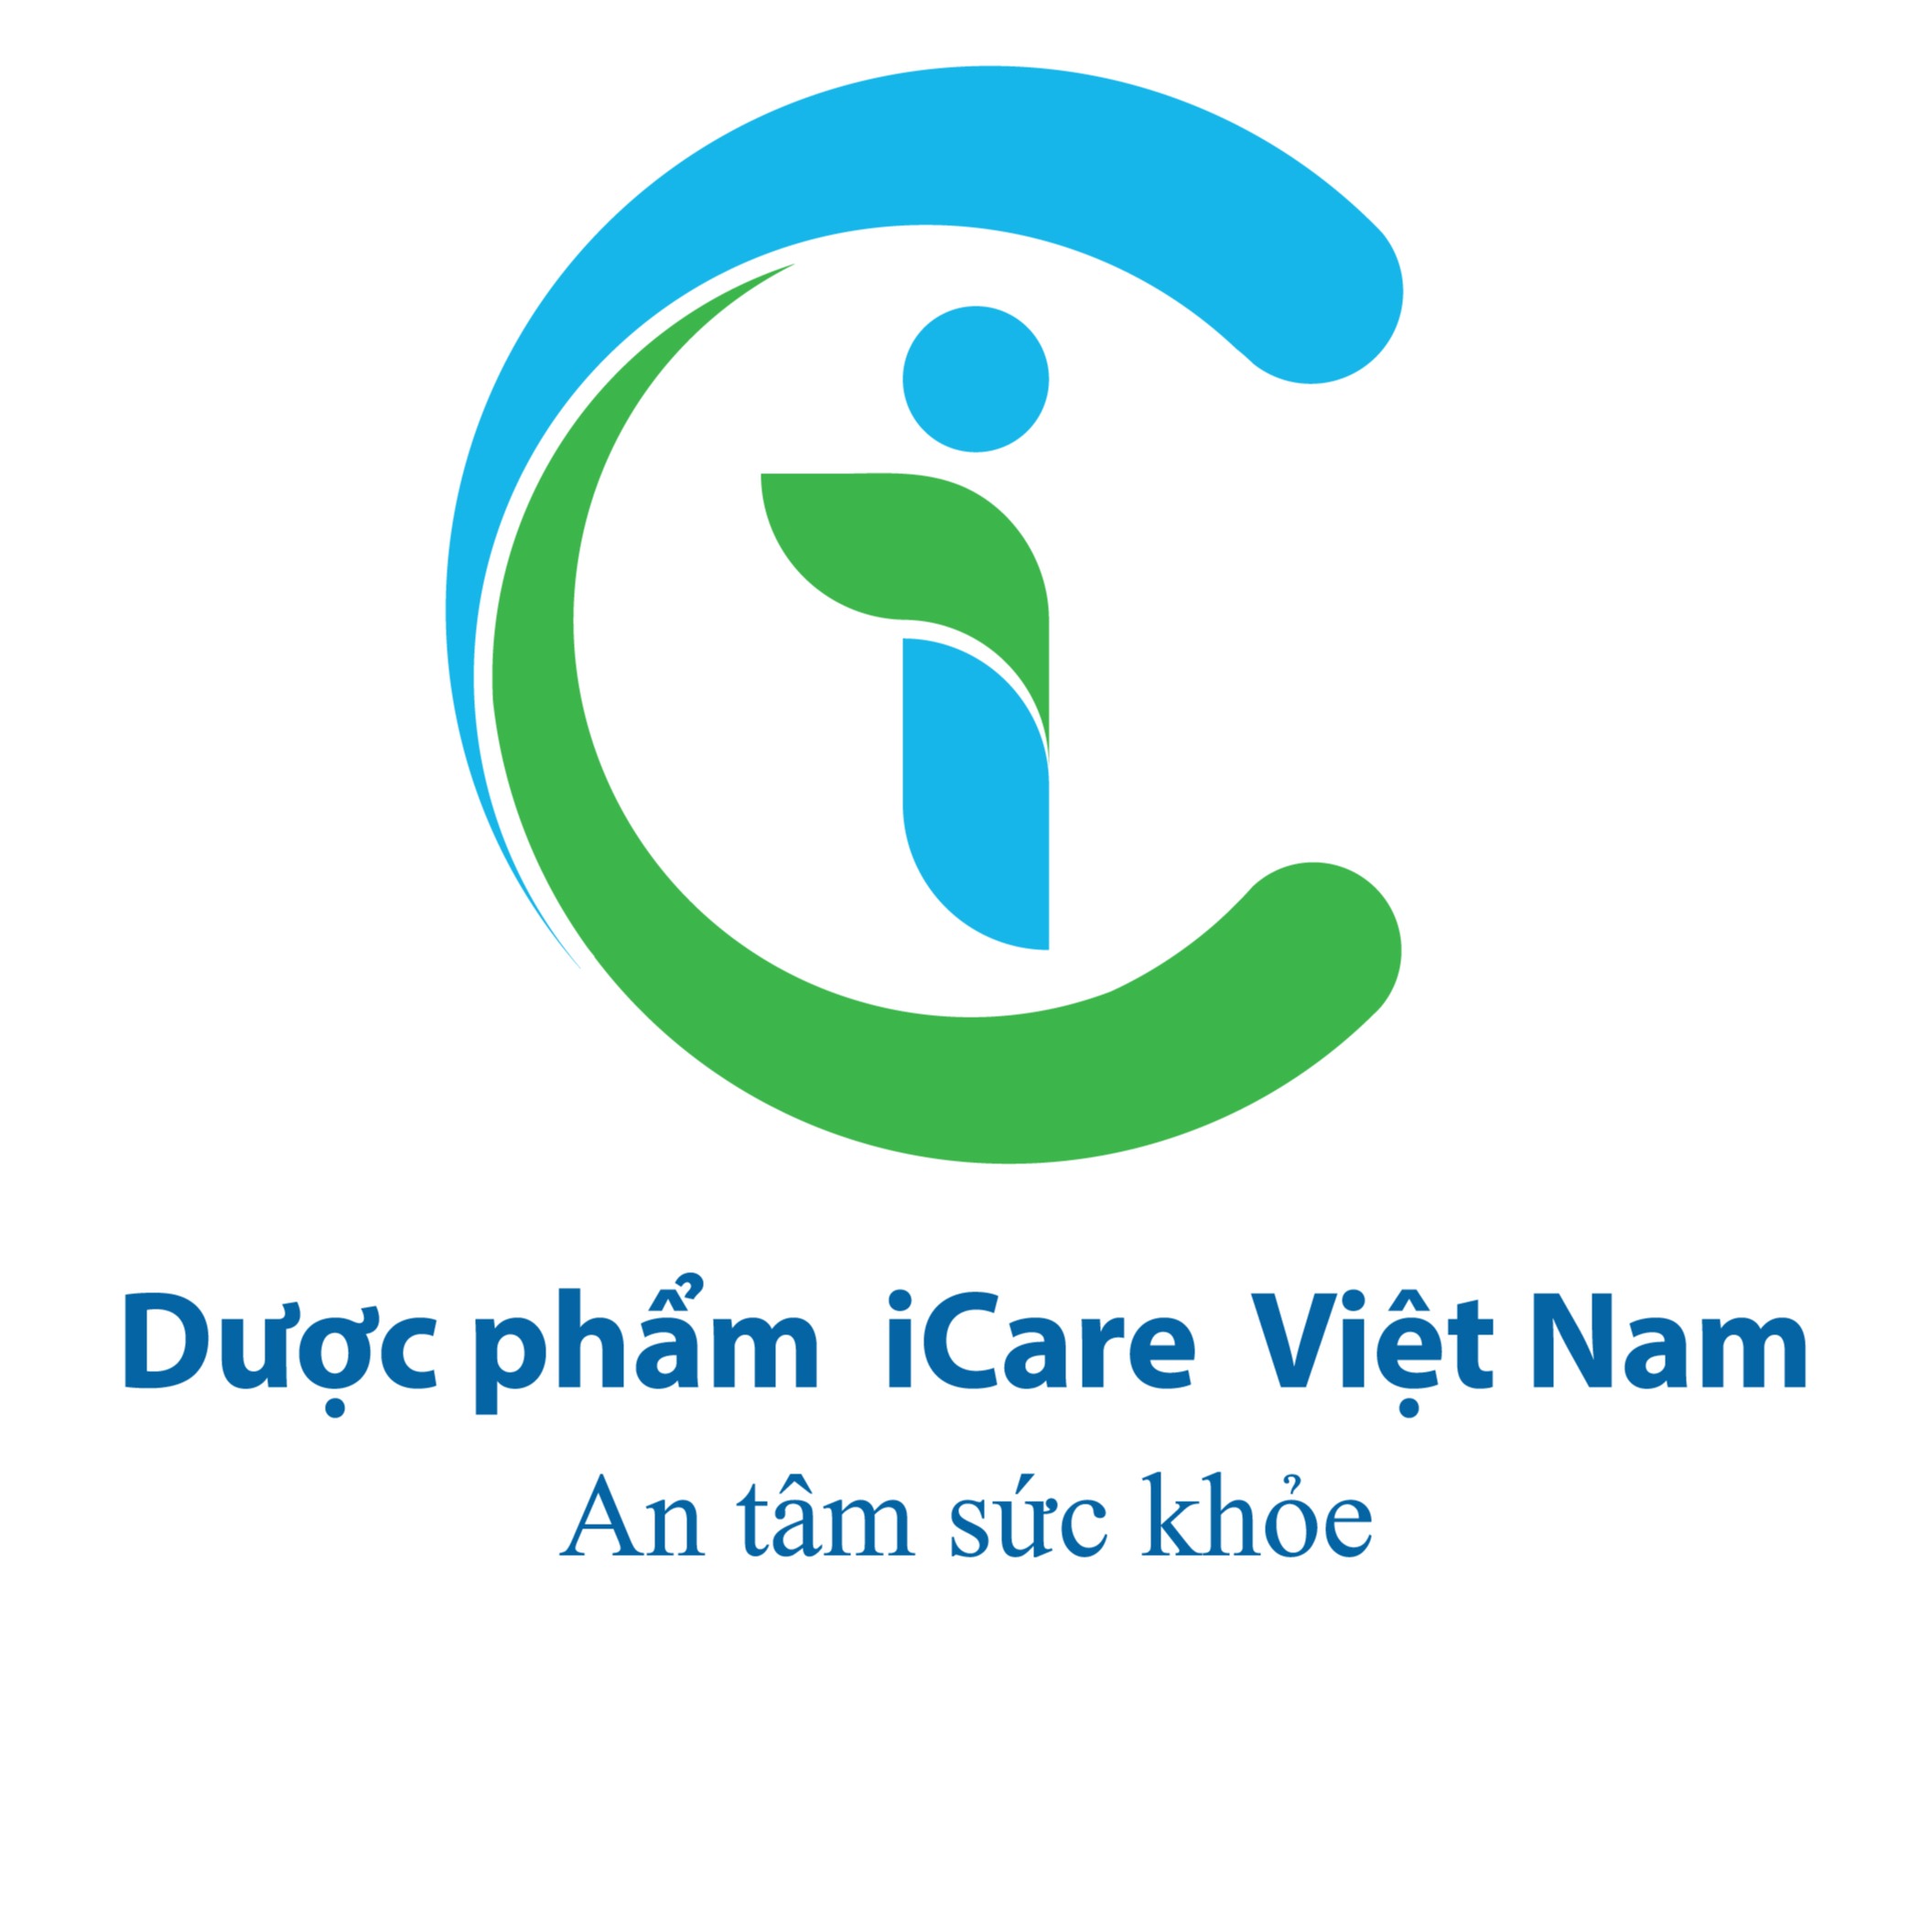 [Dược phẩm iCare Việt Nam]-Giảm 2,000 VNĐ cho đơn tối thiểu 120,000 VNĐ